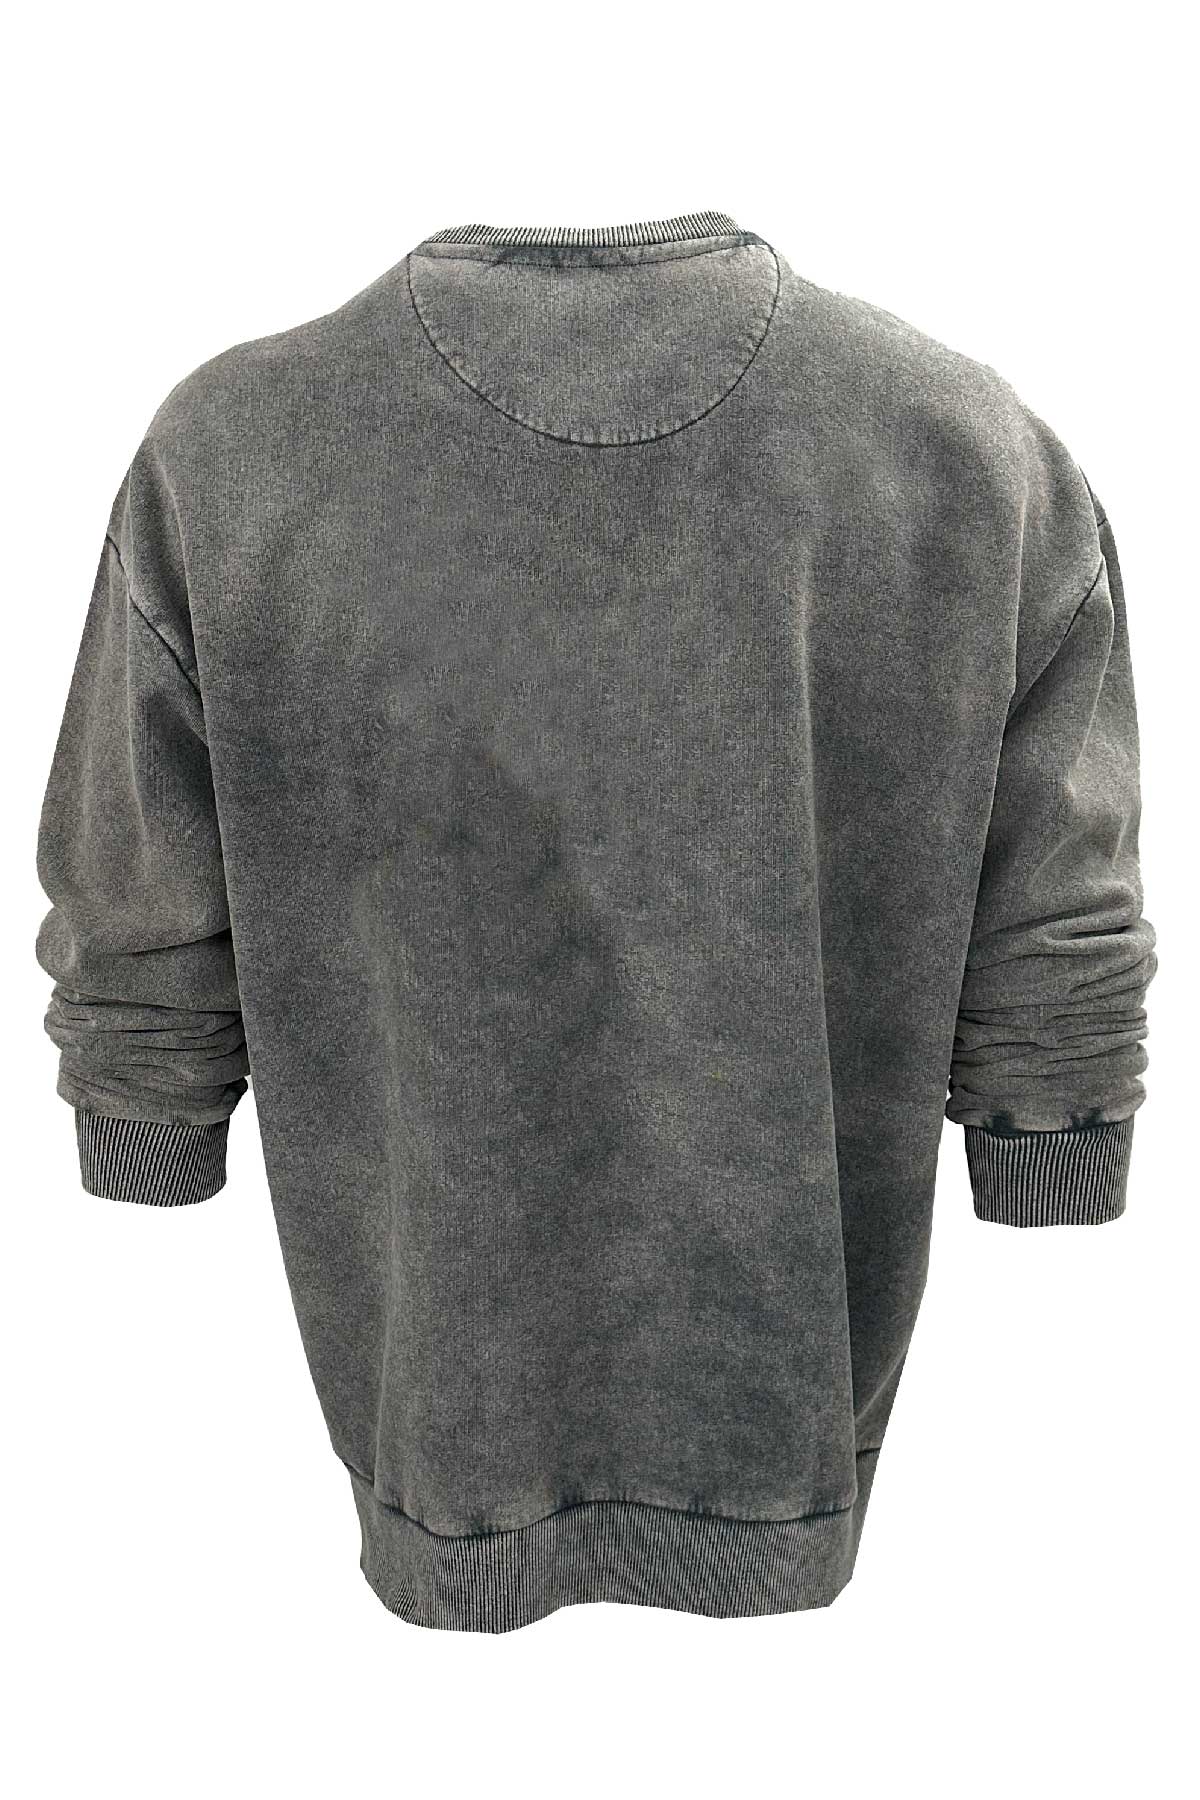 Old Bastard Unisex Crew Neck Long Sleeve Acid Wash Swordfish Patterned Grey Sweatshirt